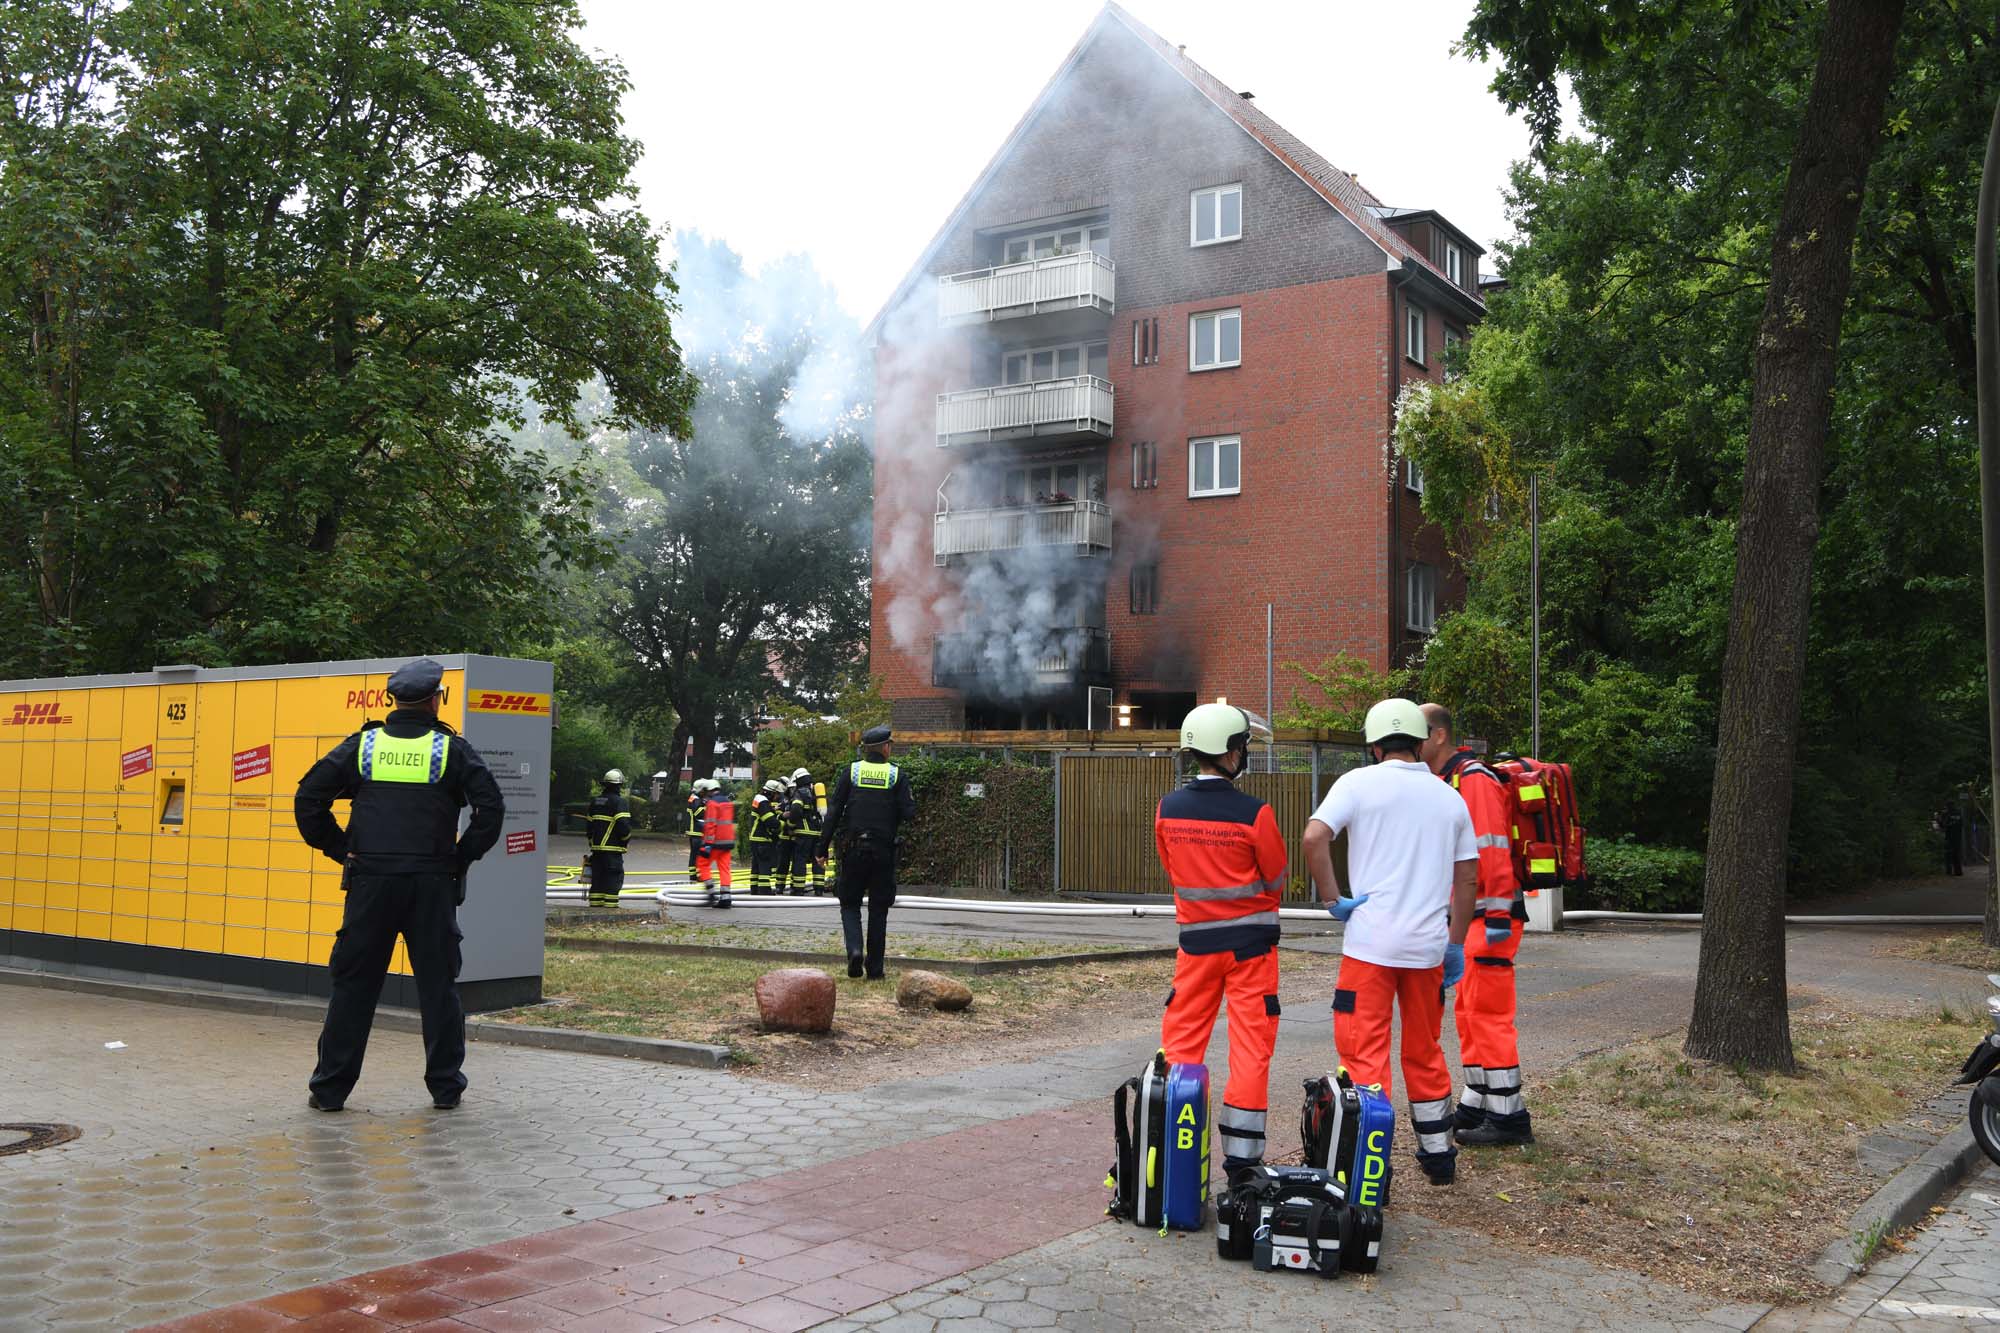 Wohnunterkunft für Jugendliche in Hamburg in Flammen – Personen vermisst